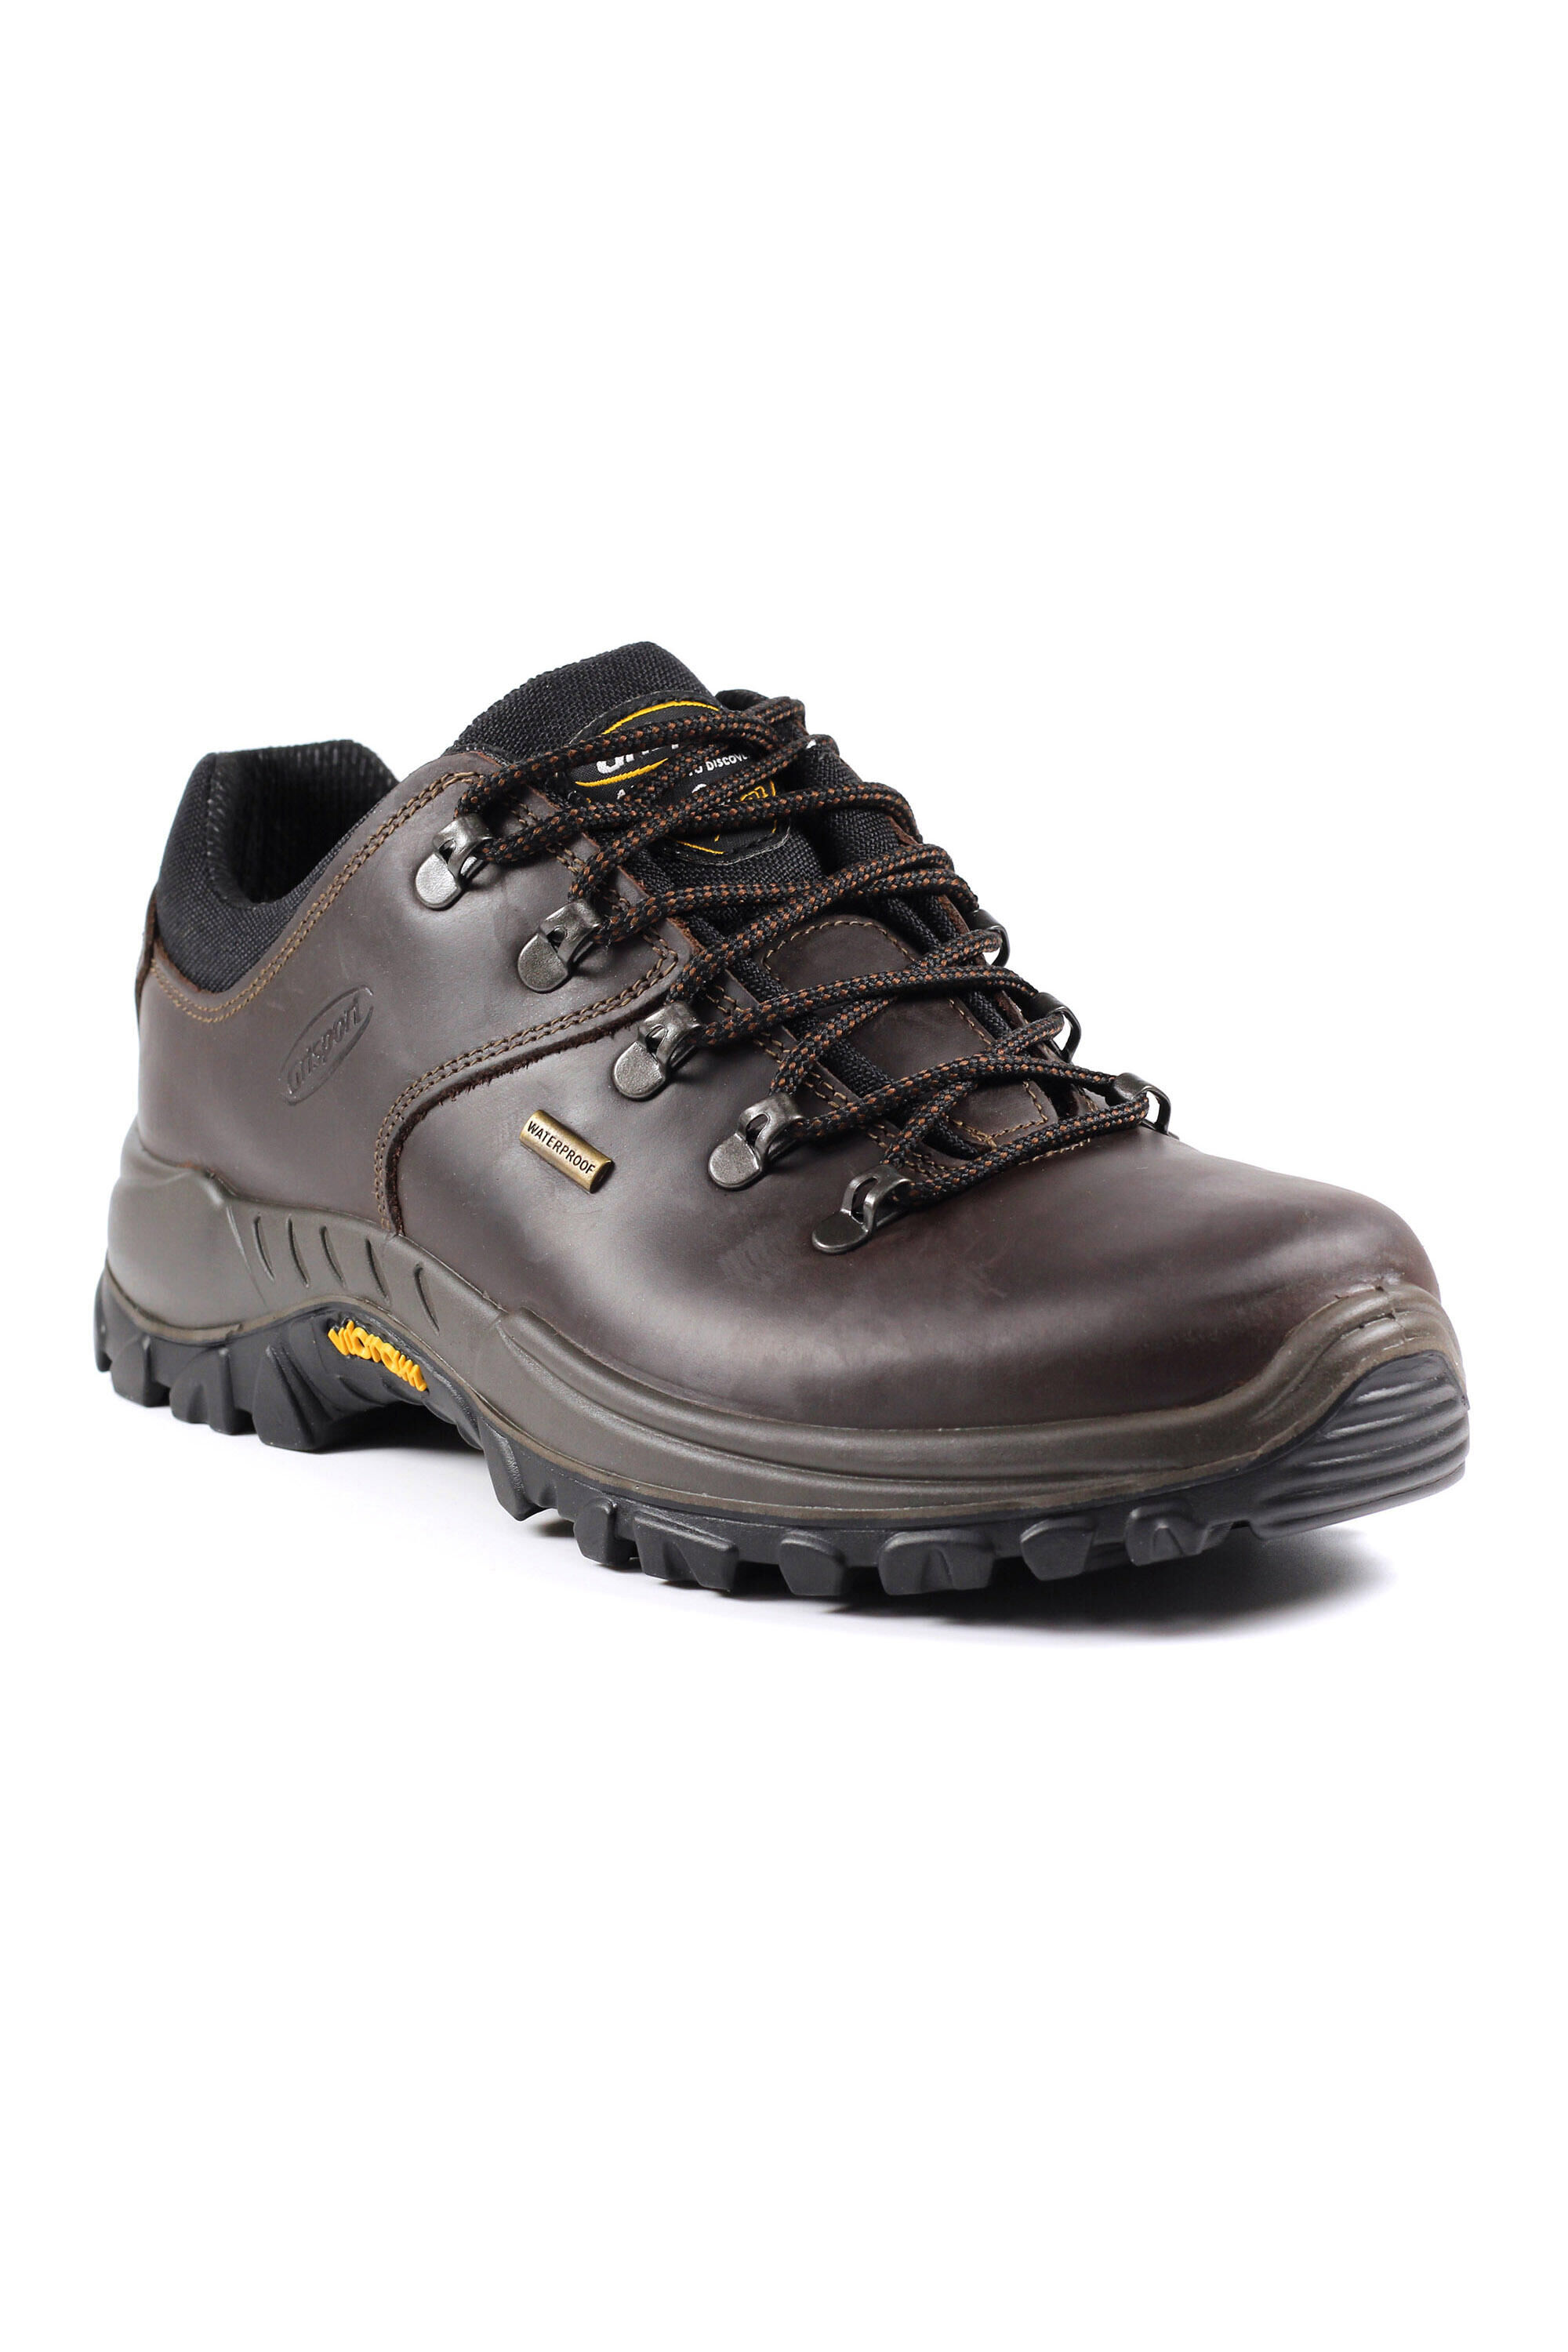 GRISPORT Dartmoor Brown Waterproof Walking Shoes